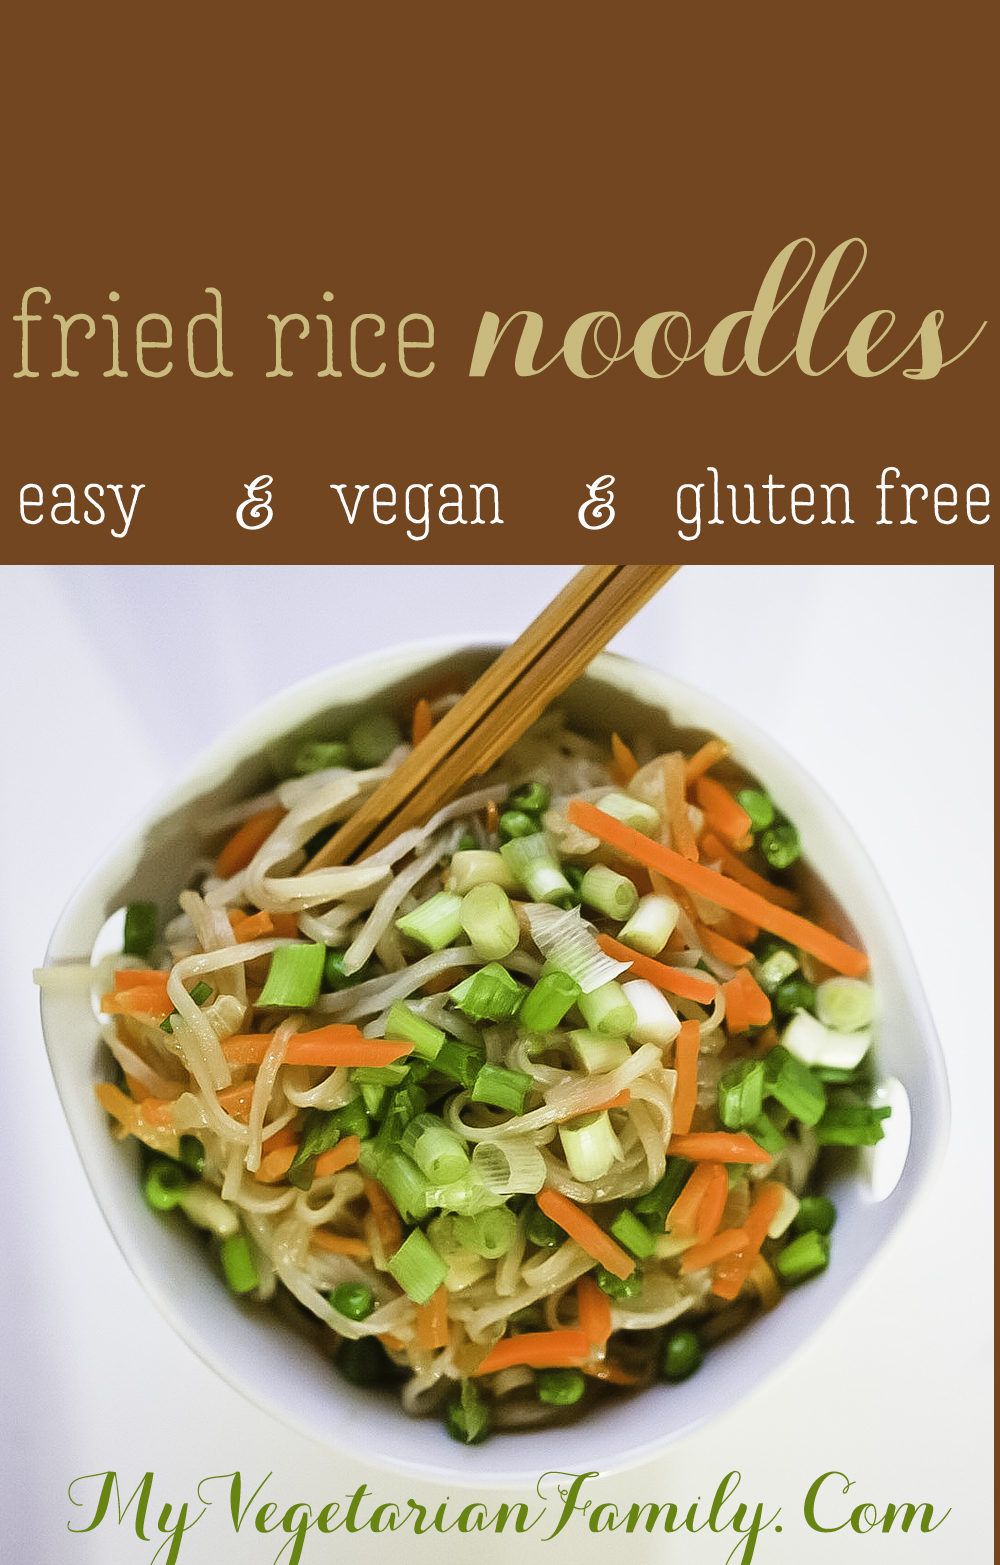 Easy Vegan Fried Rice Noodles | My Vegetarian Family #veganglutenfreenoodles #friedricenoodles #myvegetarianfamily